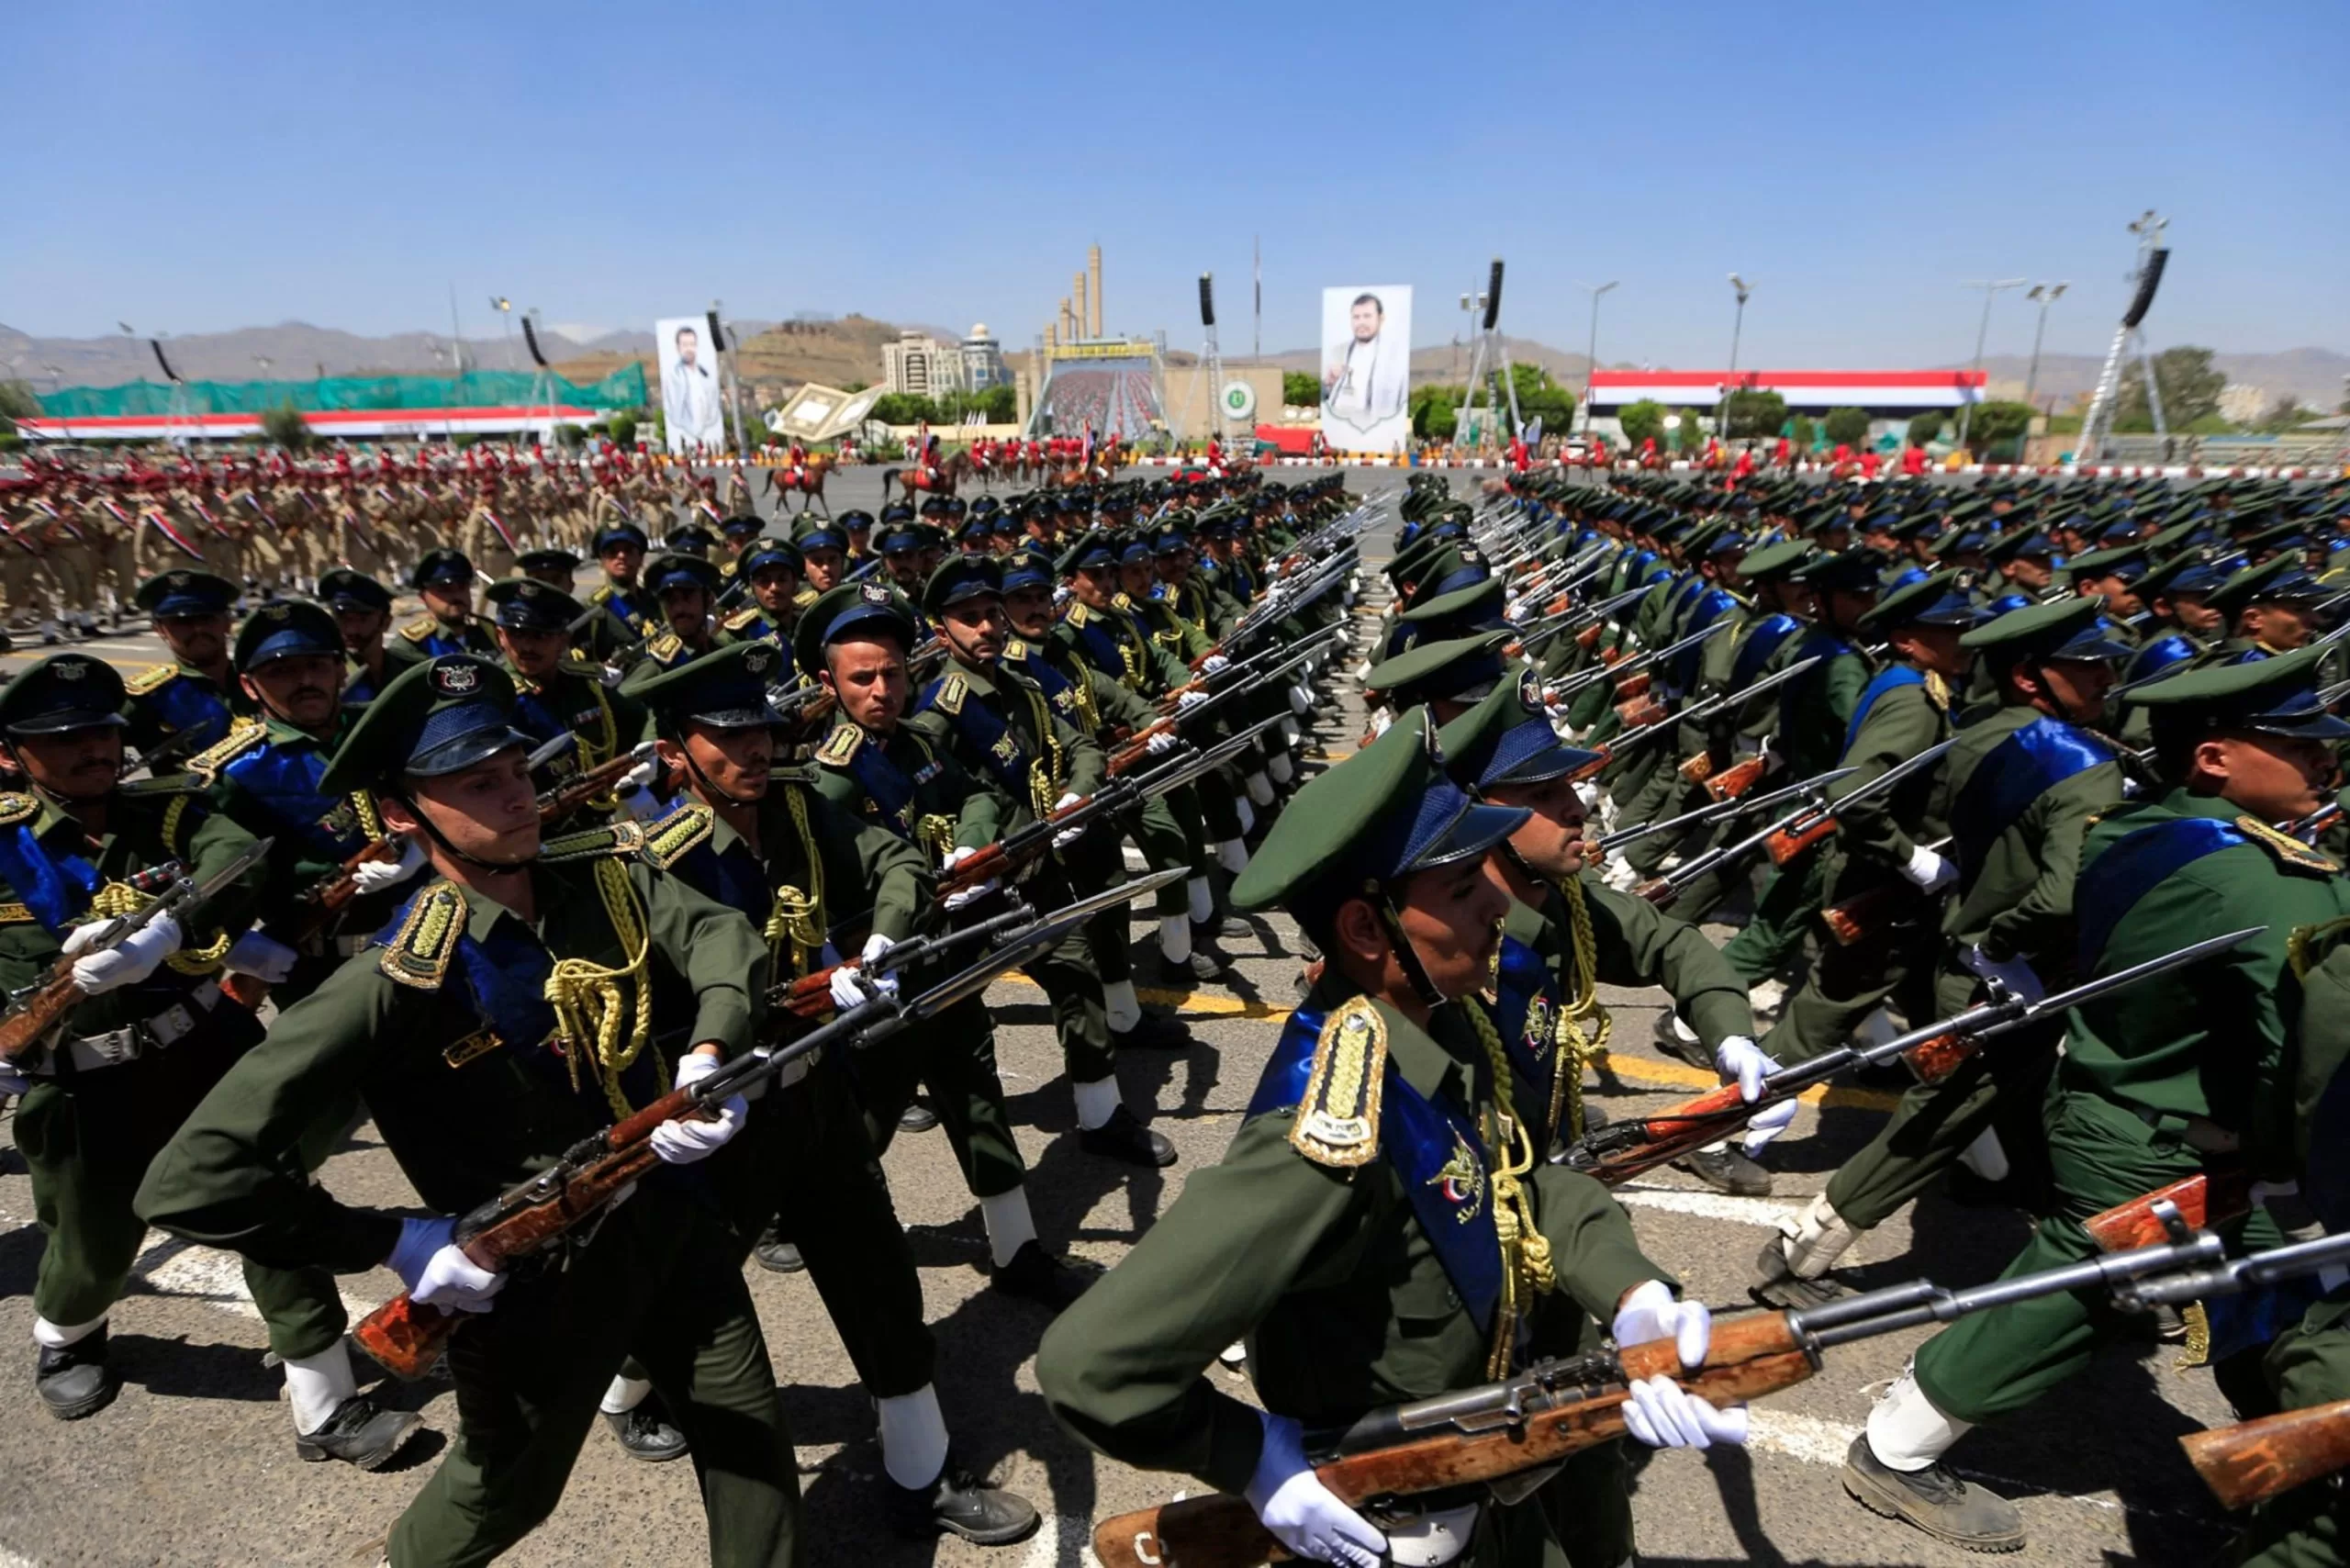 أخبار اليمن اليوم - استدعاء الحوثيين: هل يستعدون لاستعراض جديد أم عملية عسكرية كبيرة؟